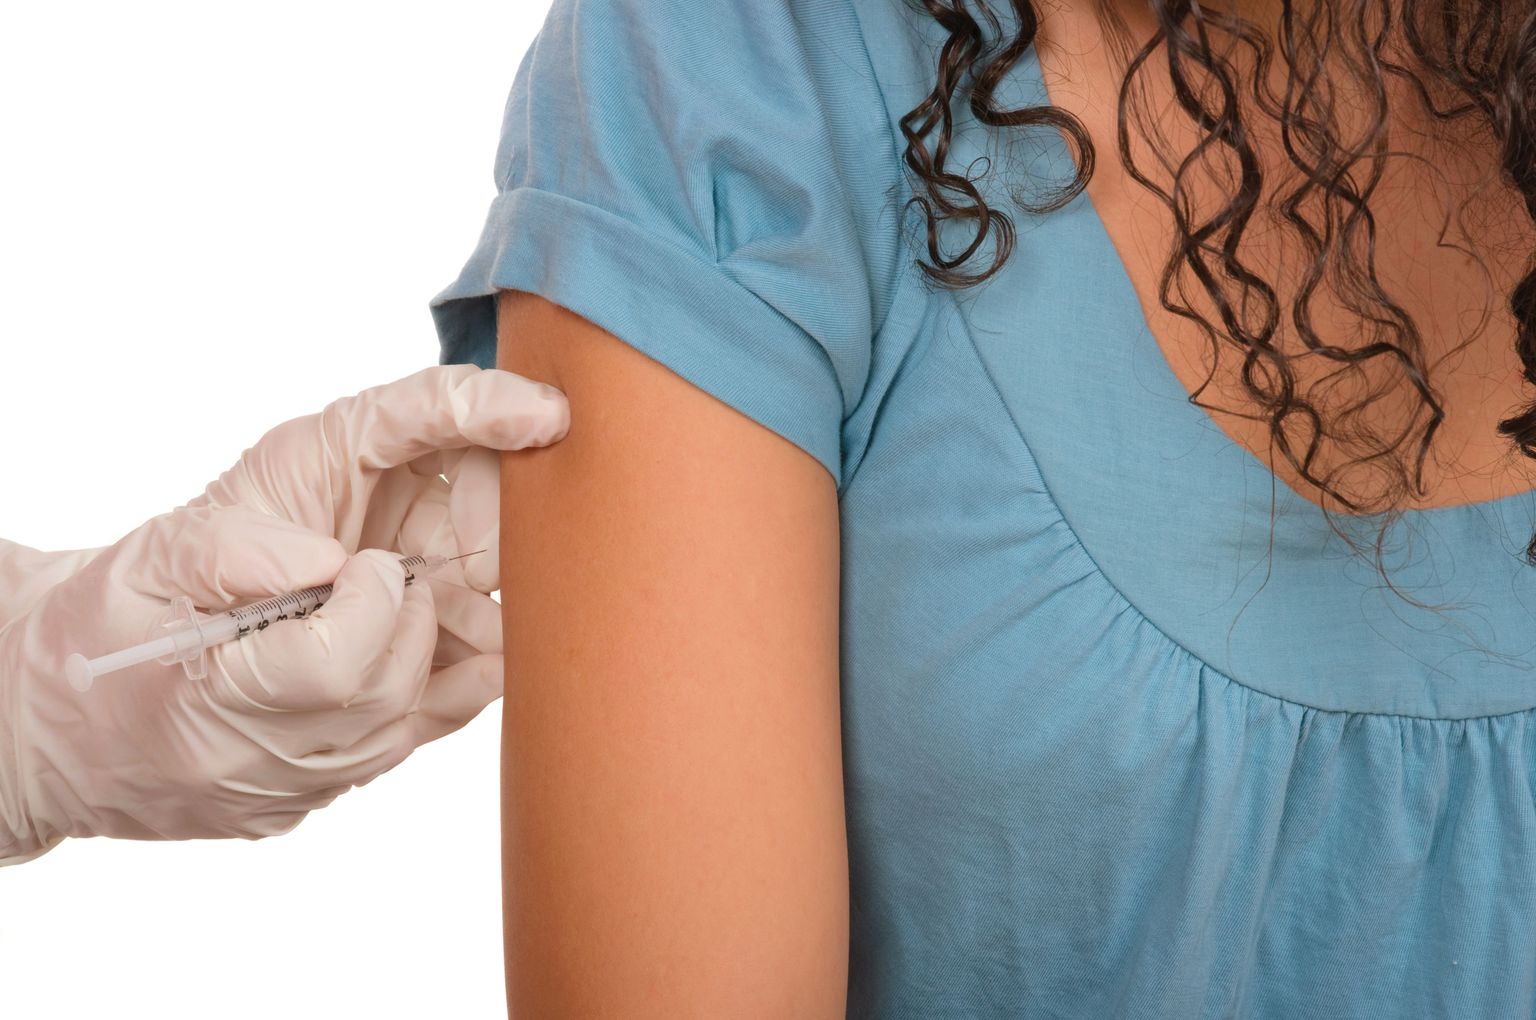 HPV-vaktsiinid aitavad ära hoida emakakaelavähki.